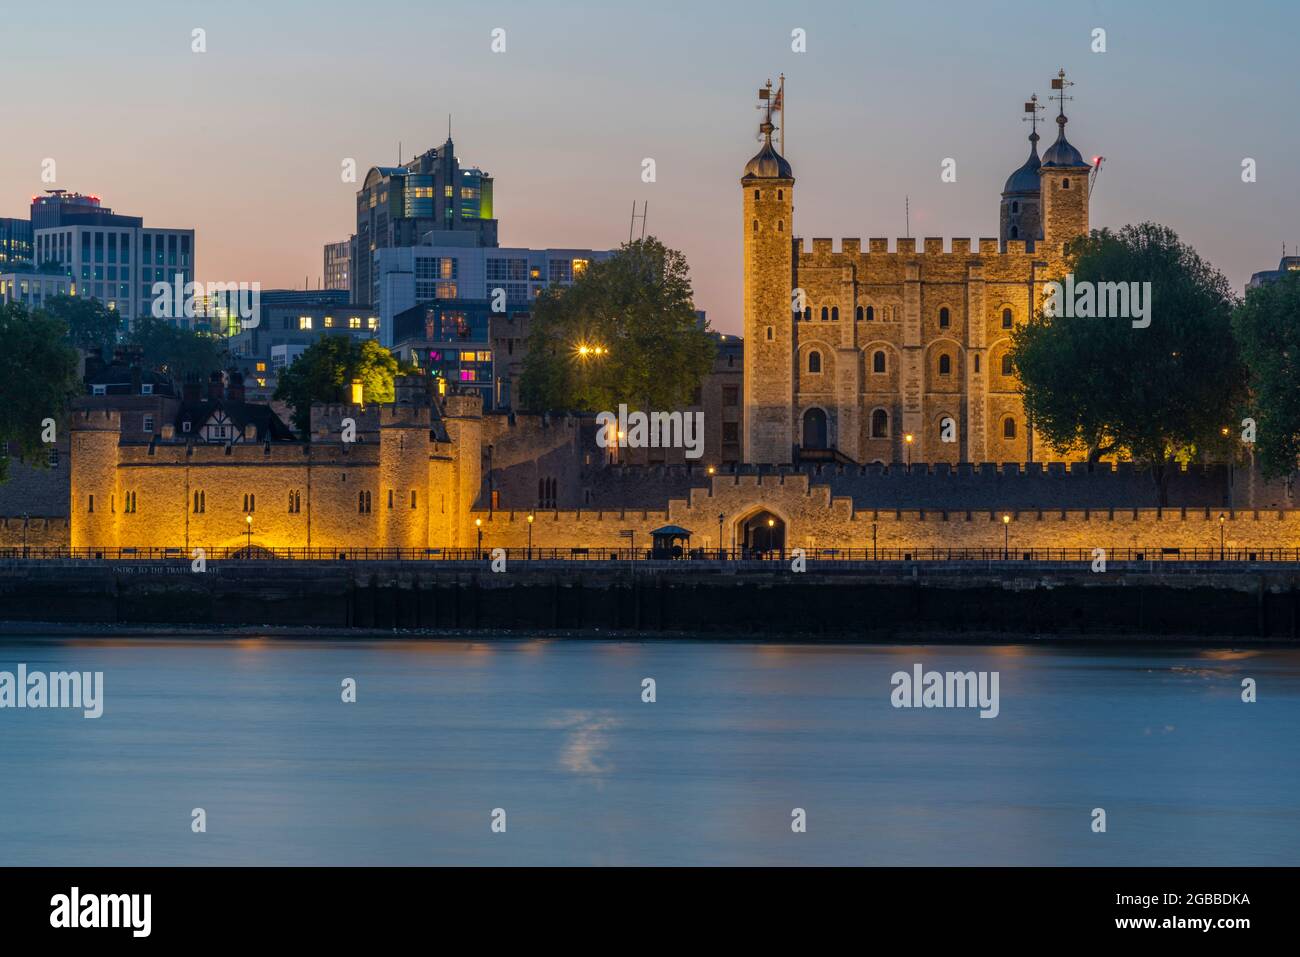 Vue sur la Tour de Londres, site classé au patrimoine mondial de l'UNESCO, et la Tamise au crépuscule, Londres, Angleterre, Royaume-Uni, Europe Banque D'Images